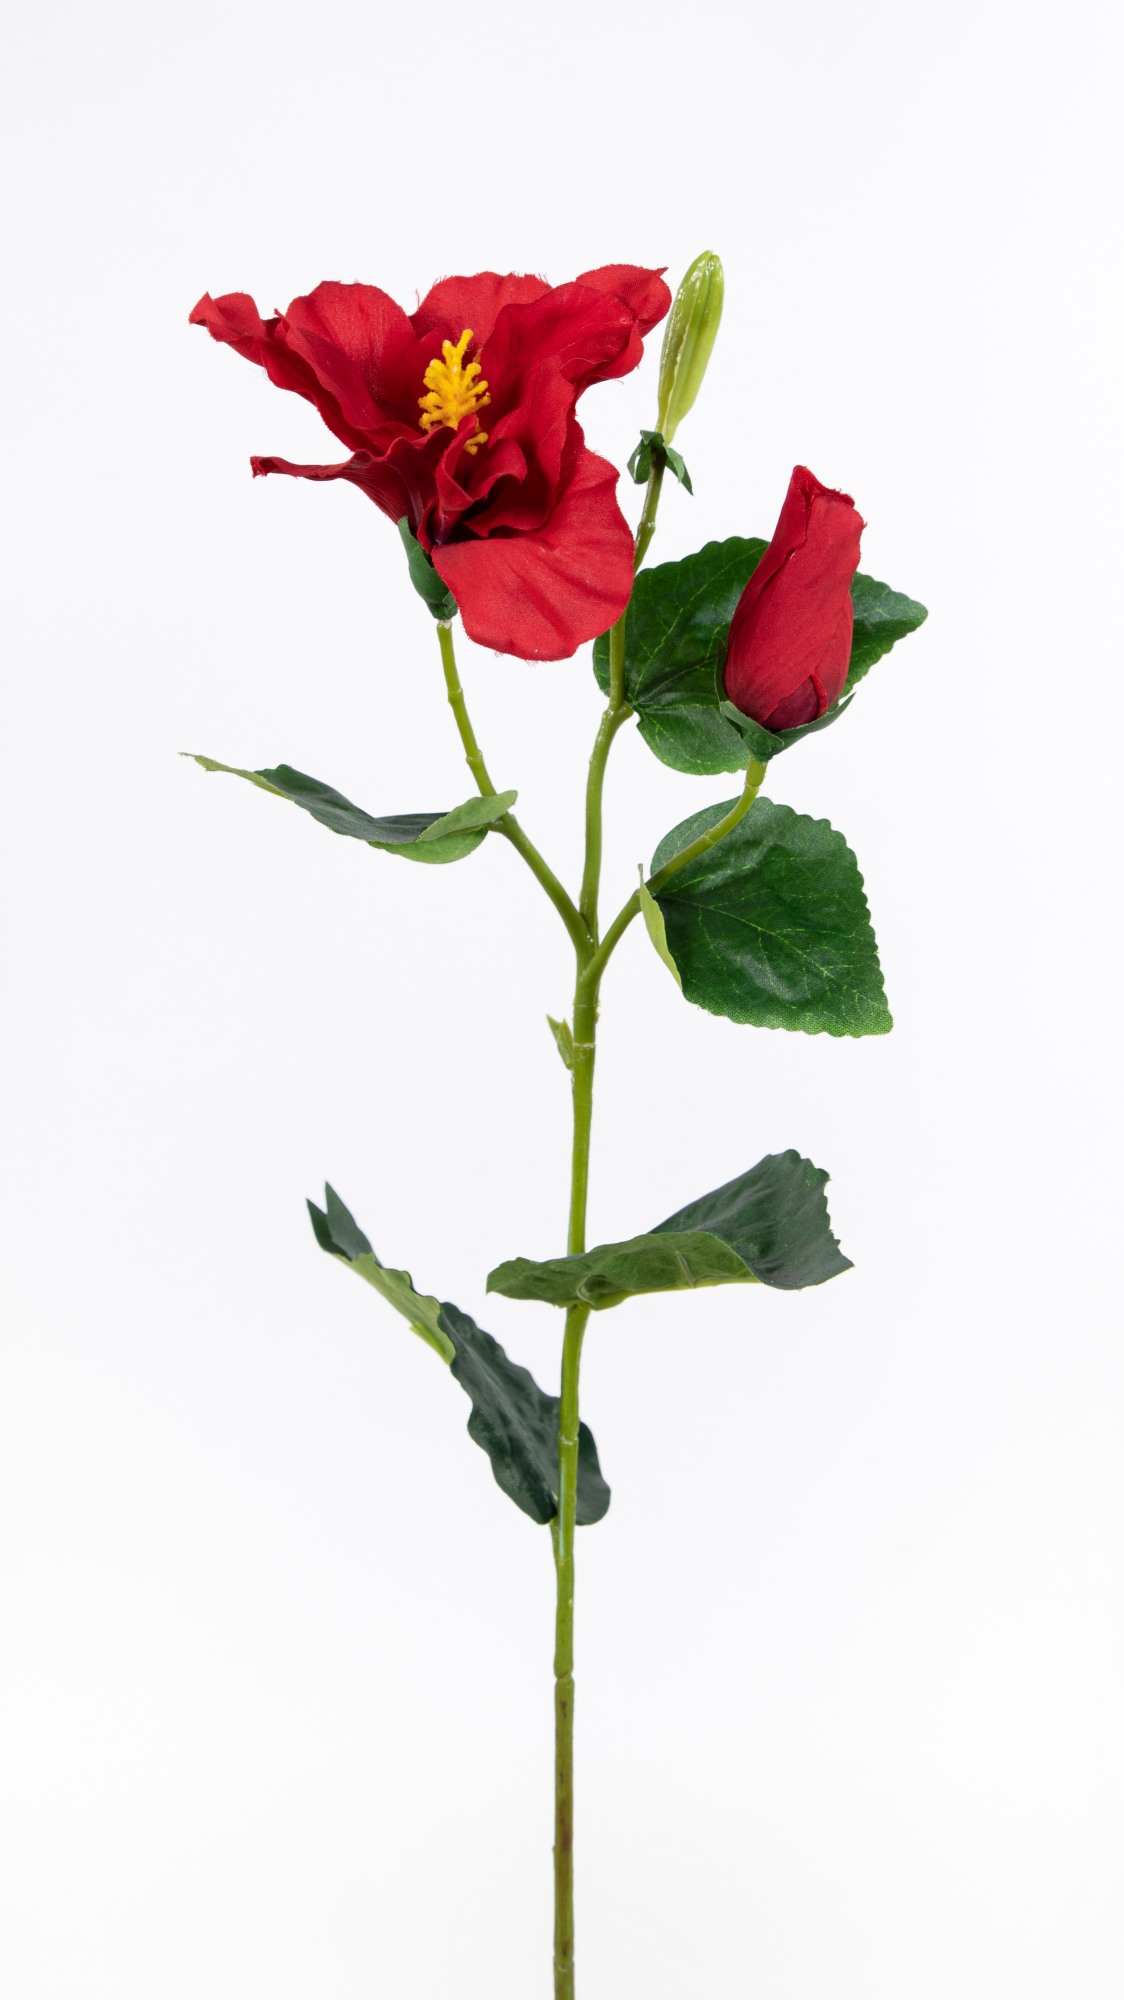 Hibiskuszweig 62cm rot OG Kunstblumen künstlicher Hibiskus Blumen Seidenblumen